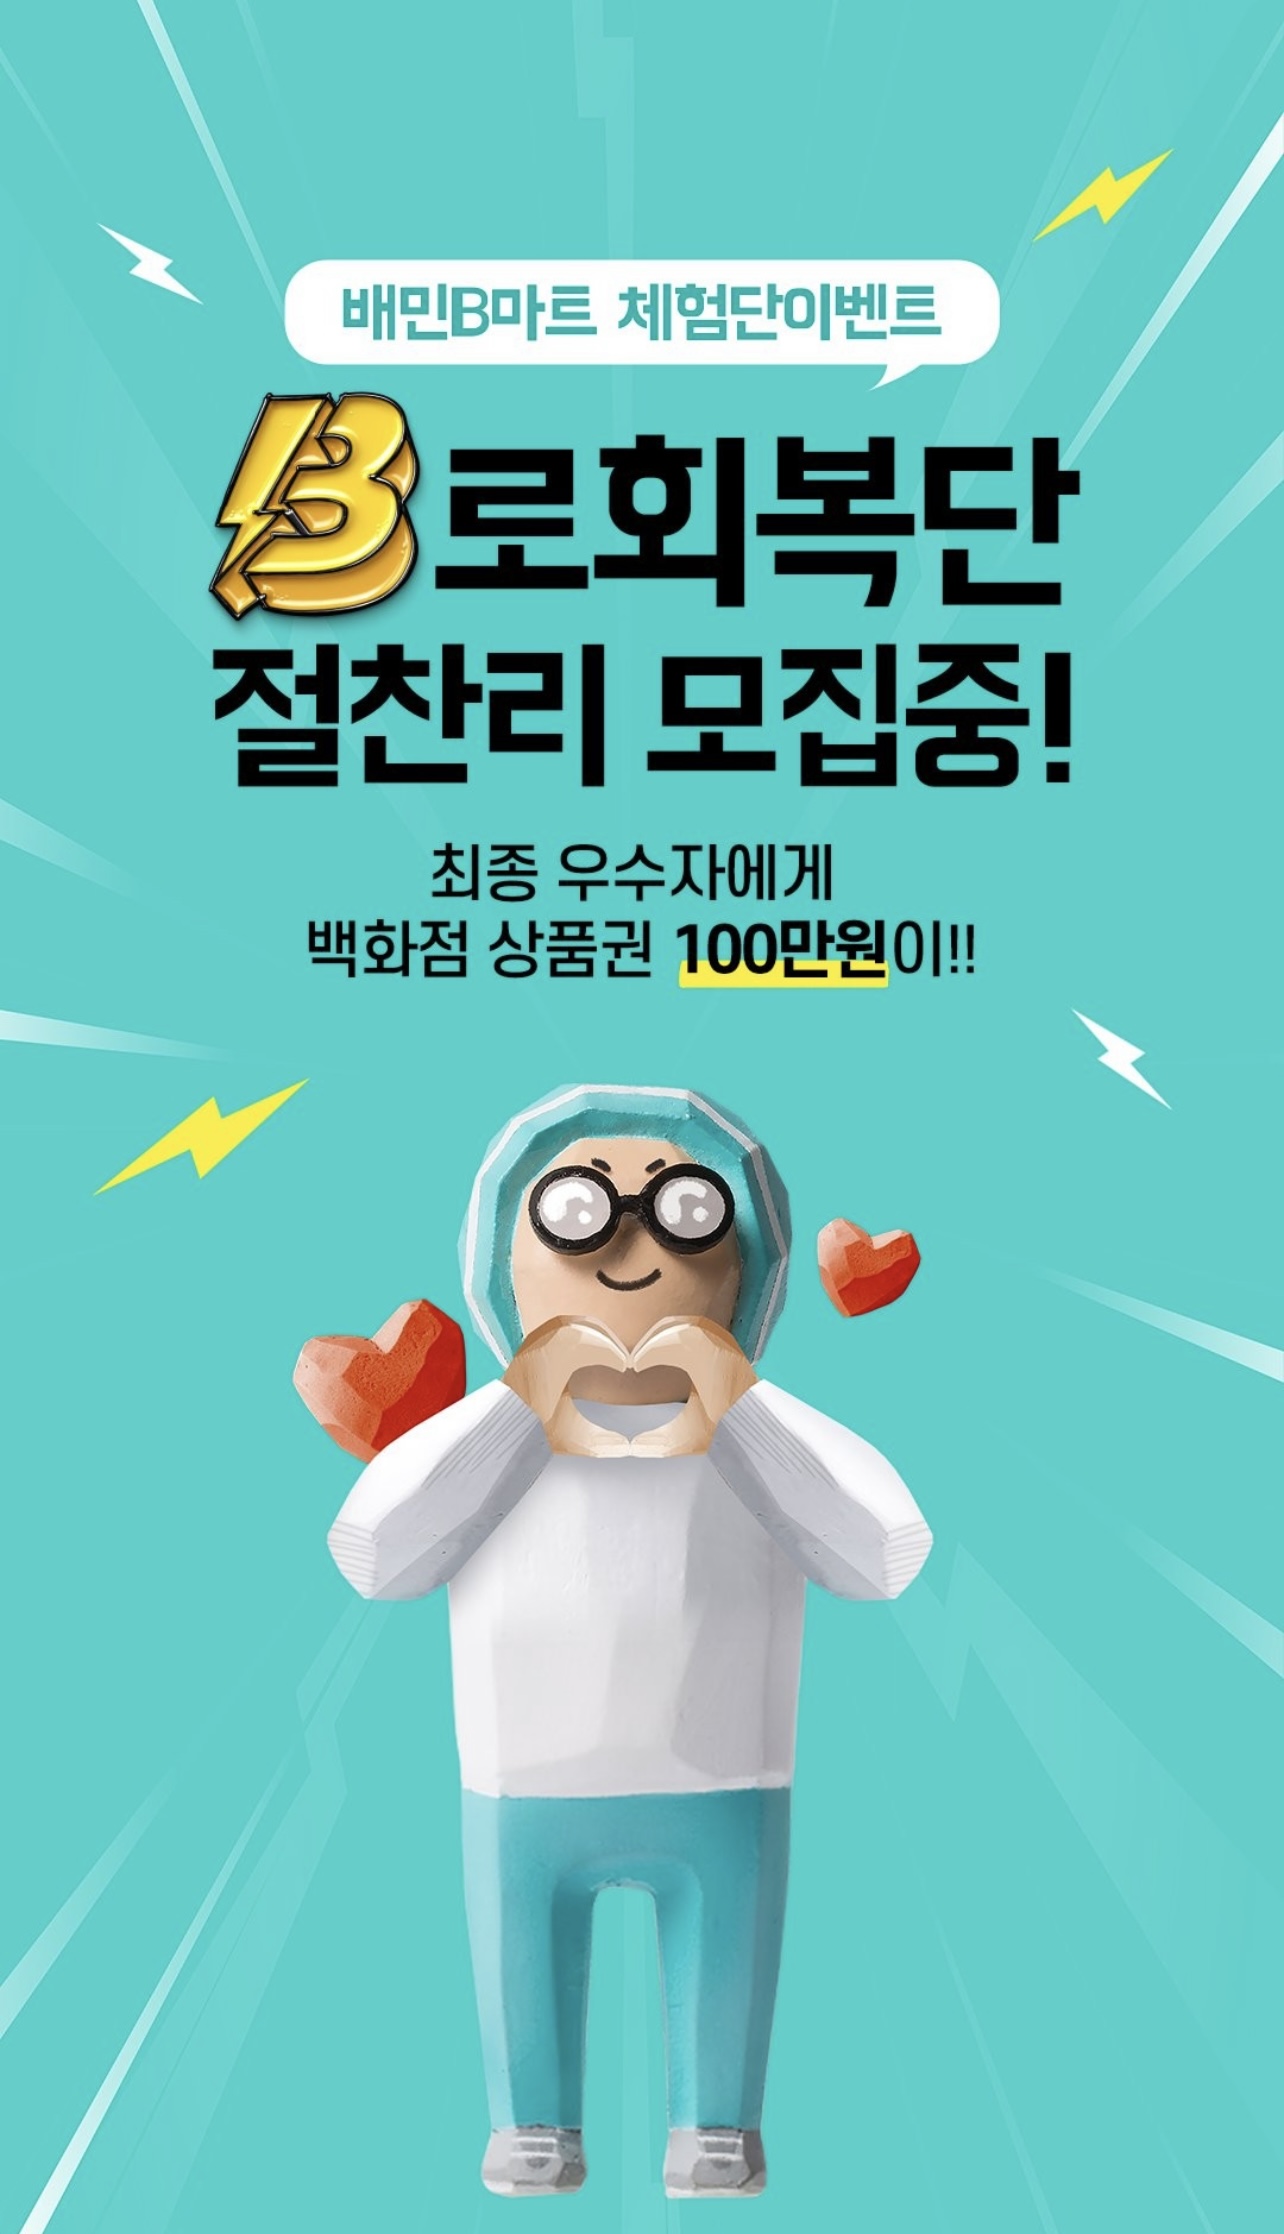 배민 B마트 체험단 'B로회복단' 모집